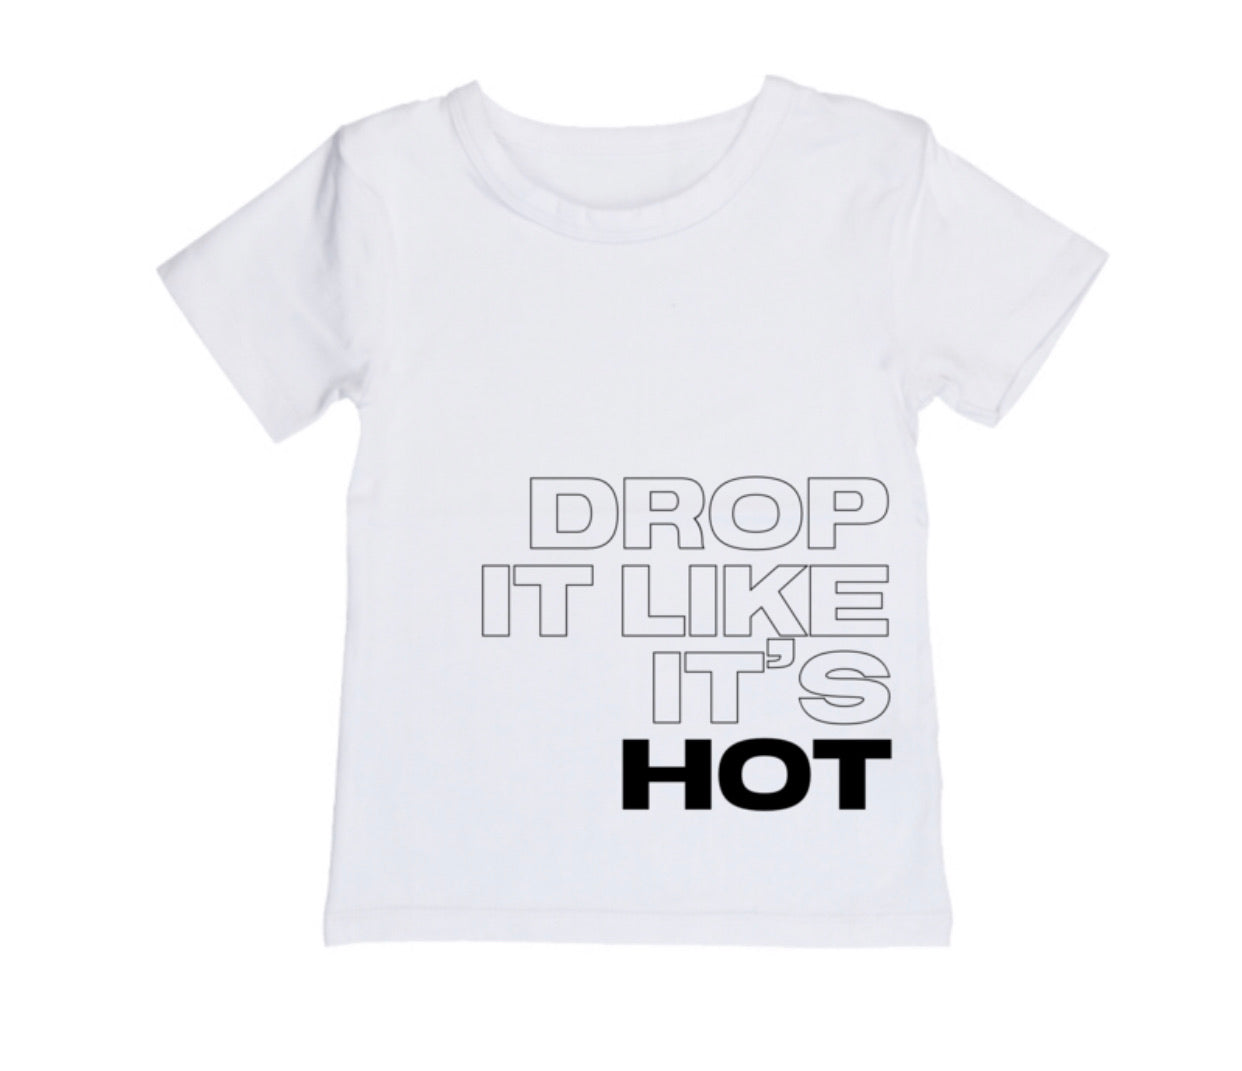 Drop it like it’s hot tee  | Mlw by design - nixonscloset